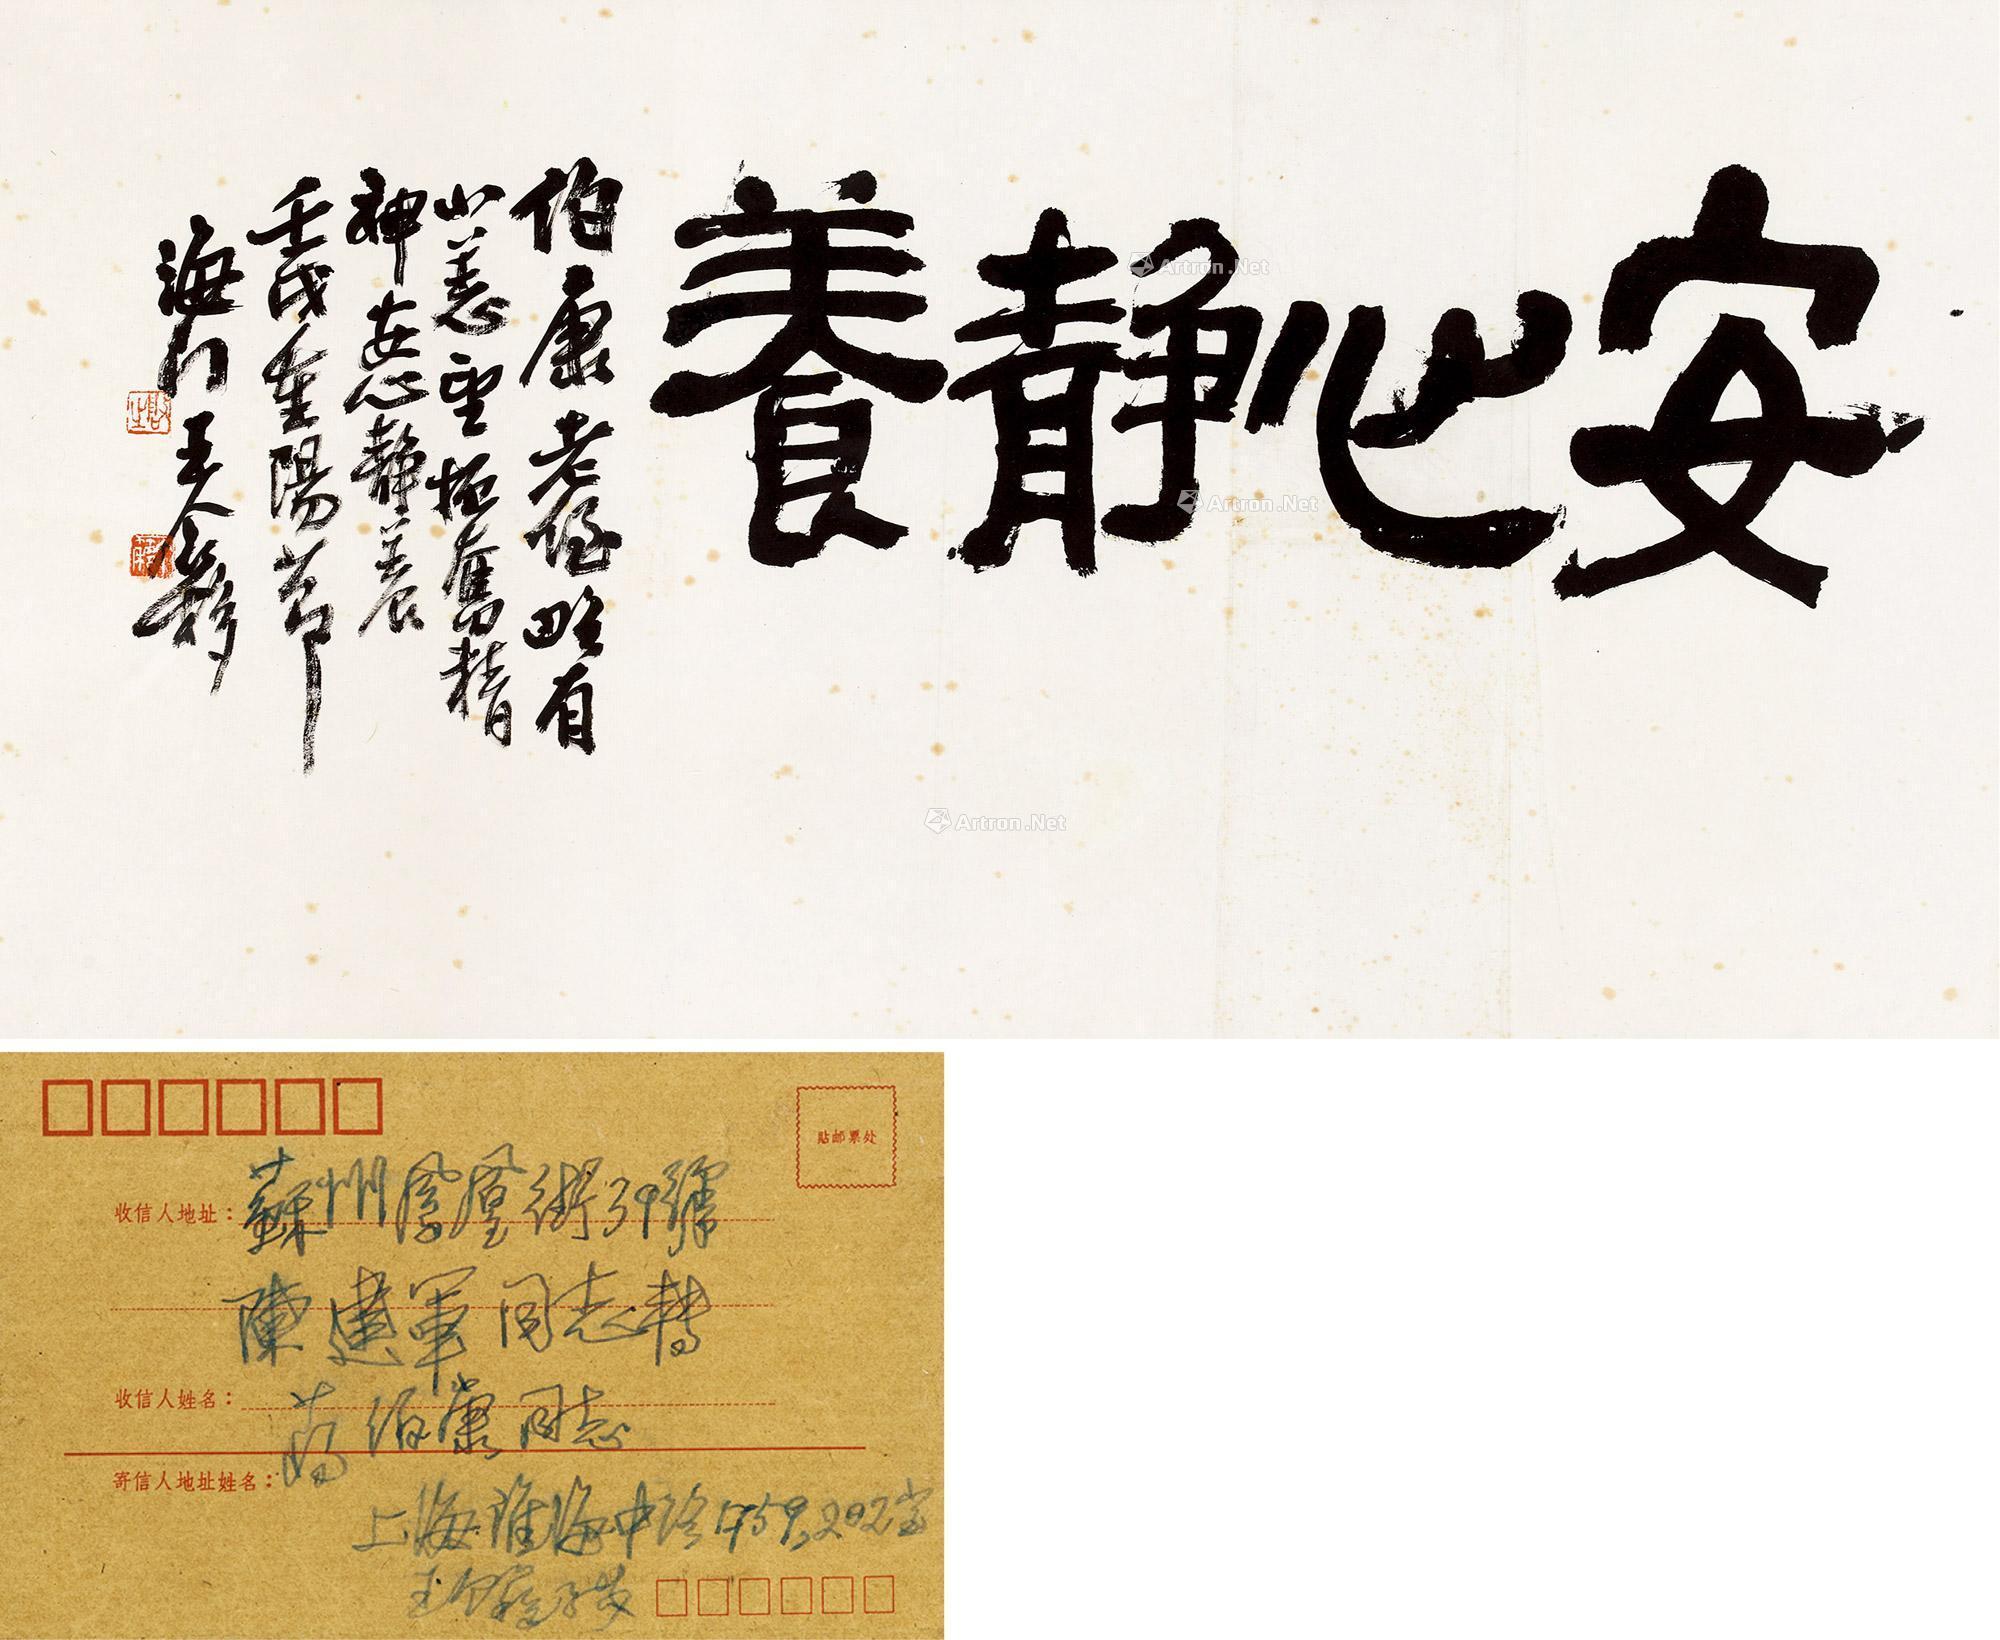 0041 壬戌(1982)年作 隶书「安心静养」 镜框 纸本